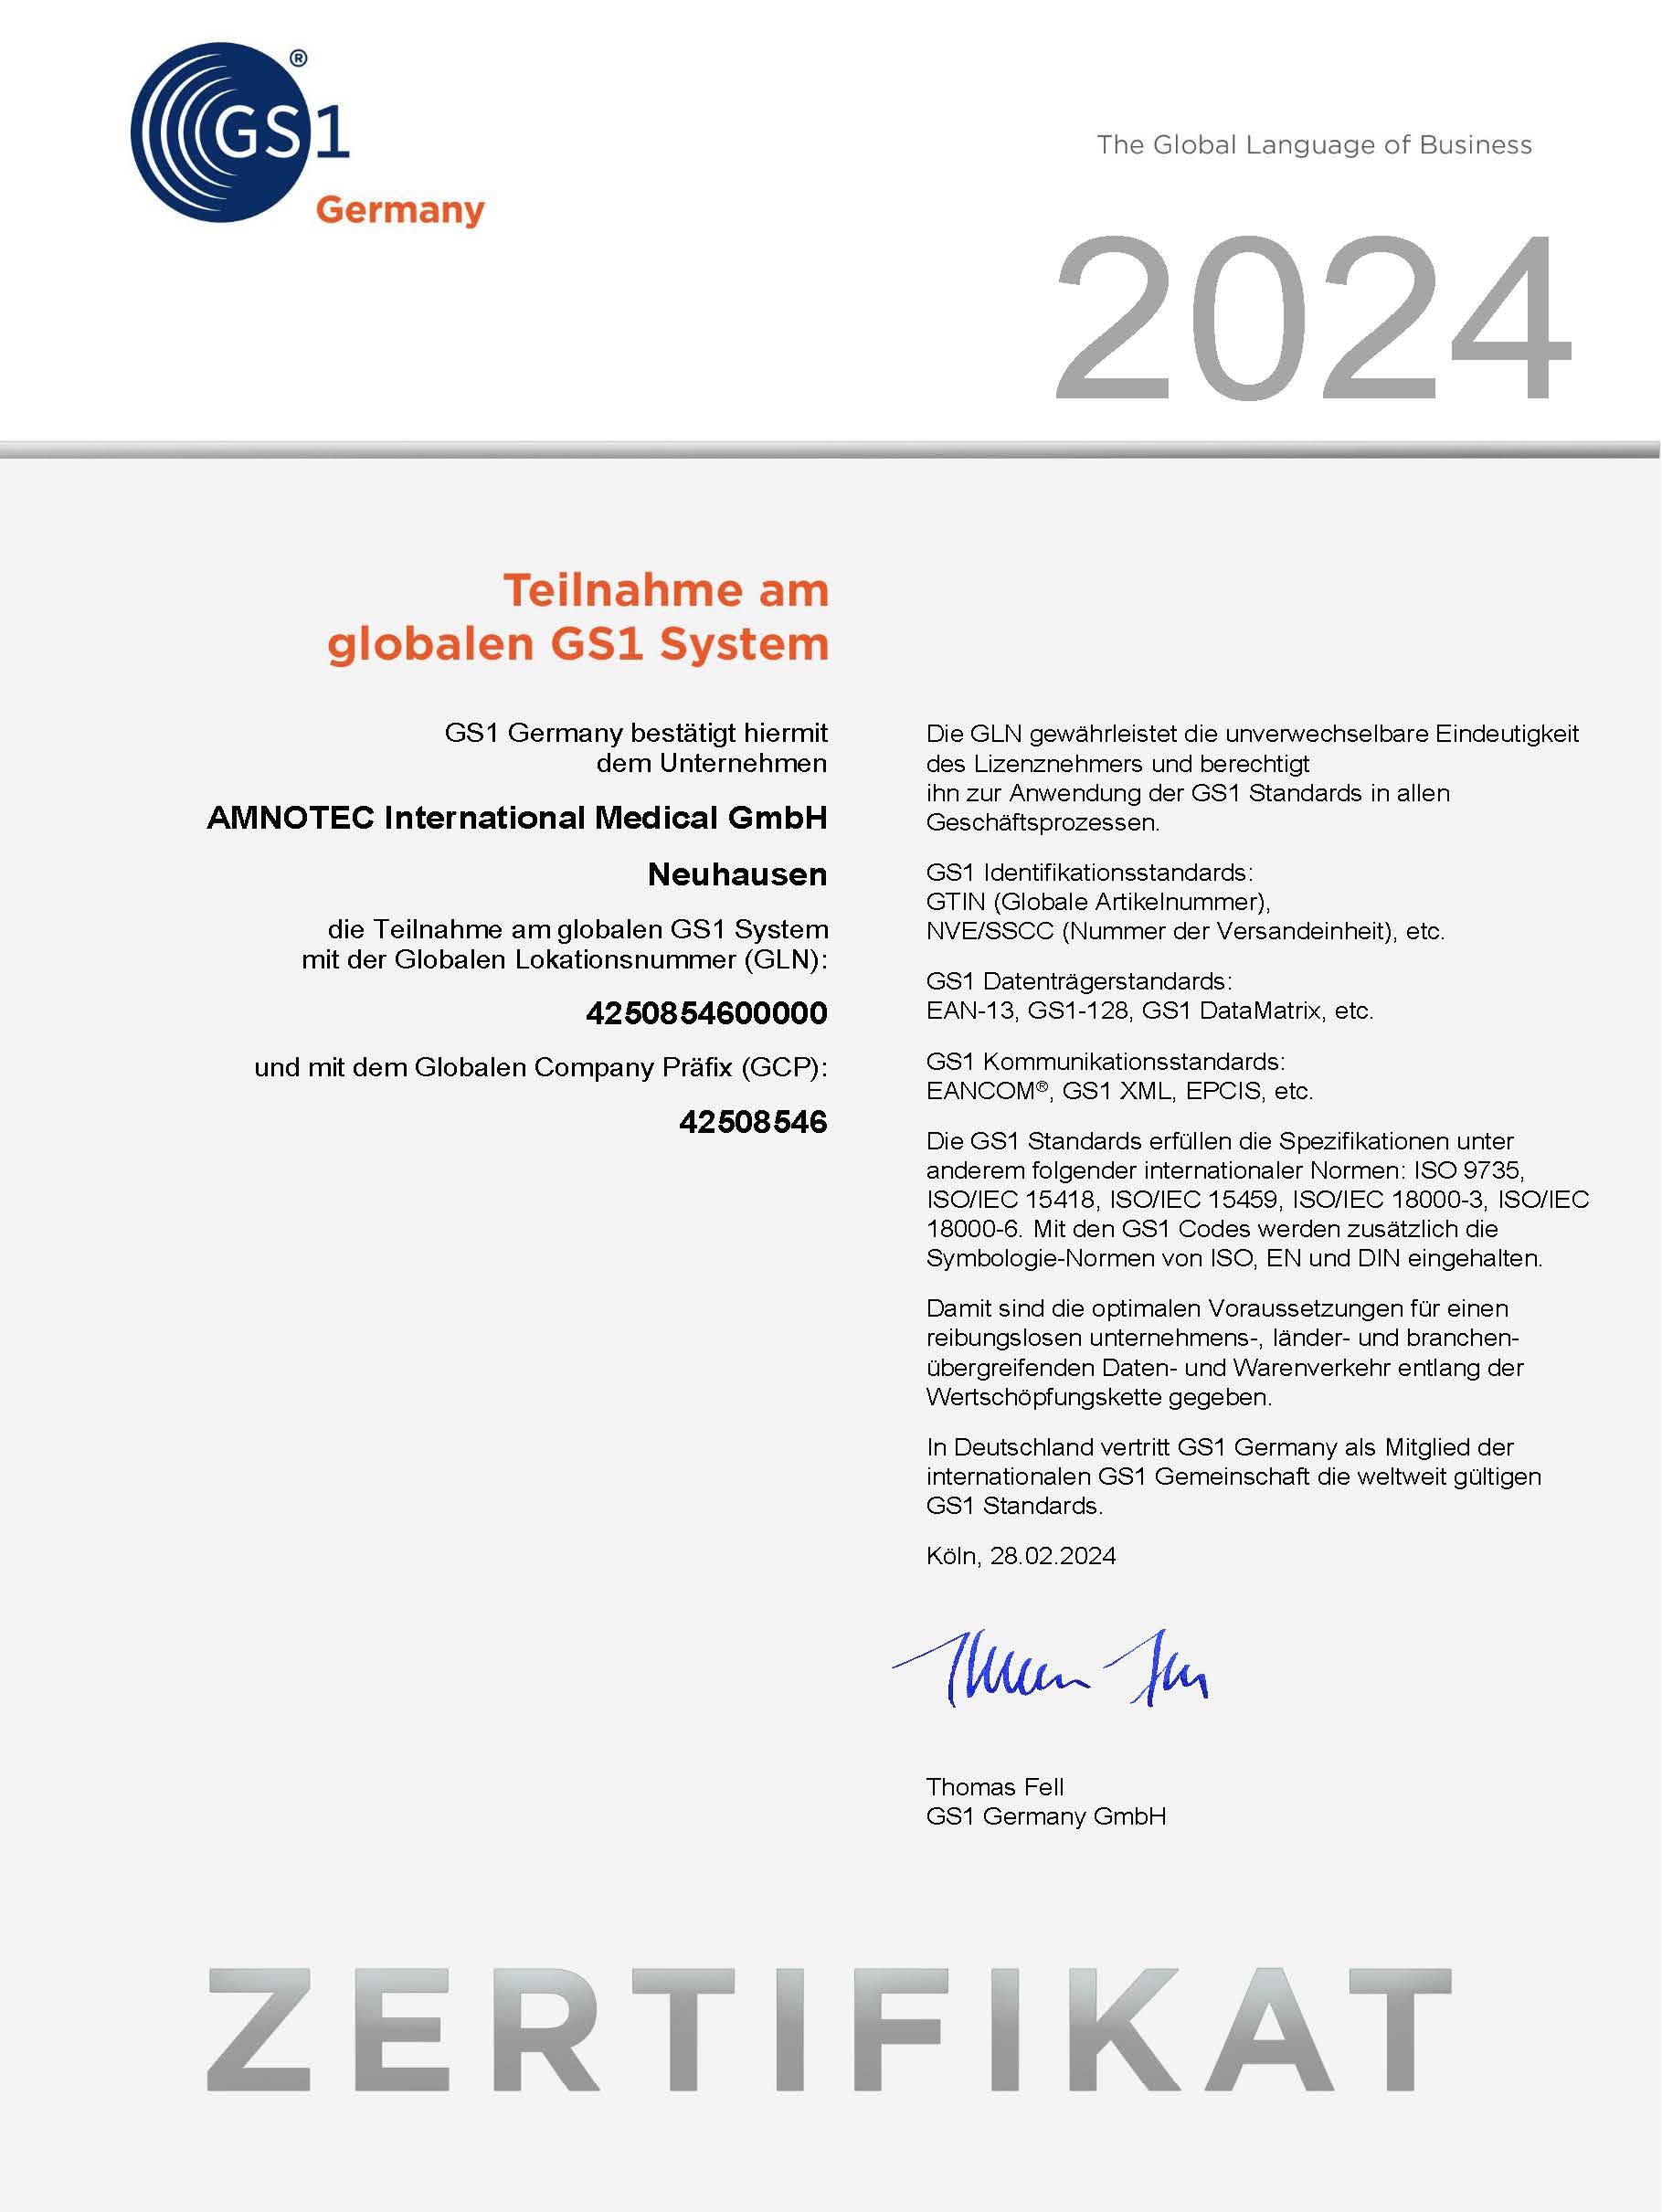 DokumentenBild zu Teilnahme am globalen GS1 System